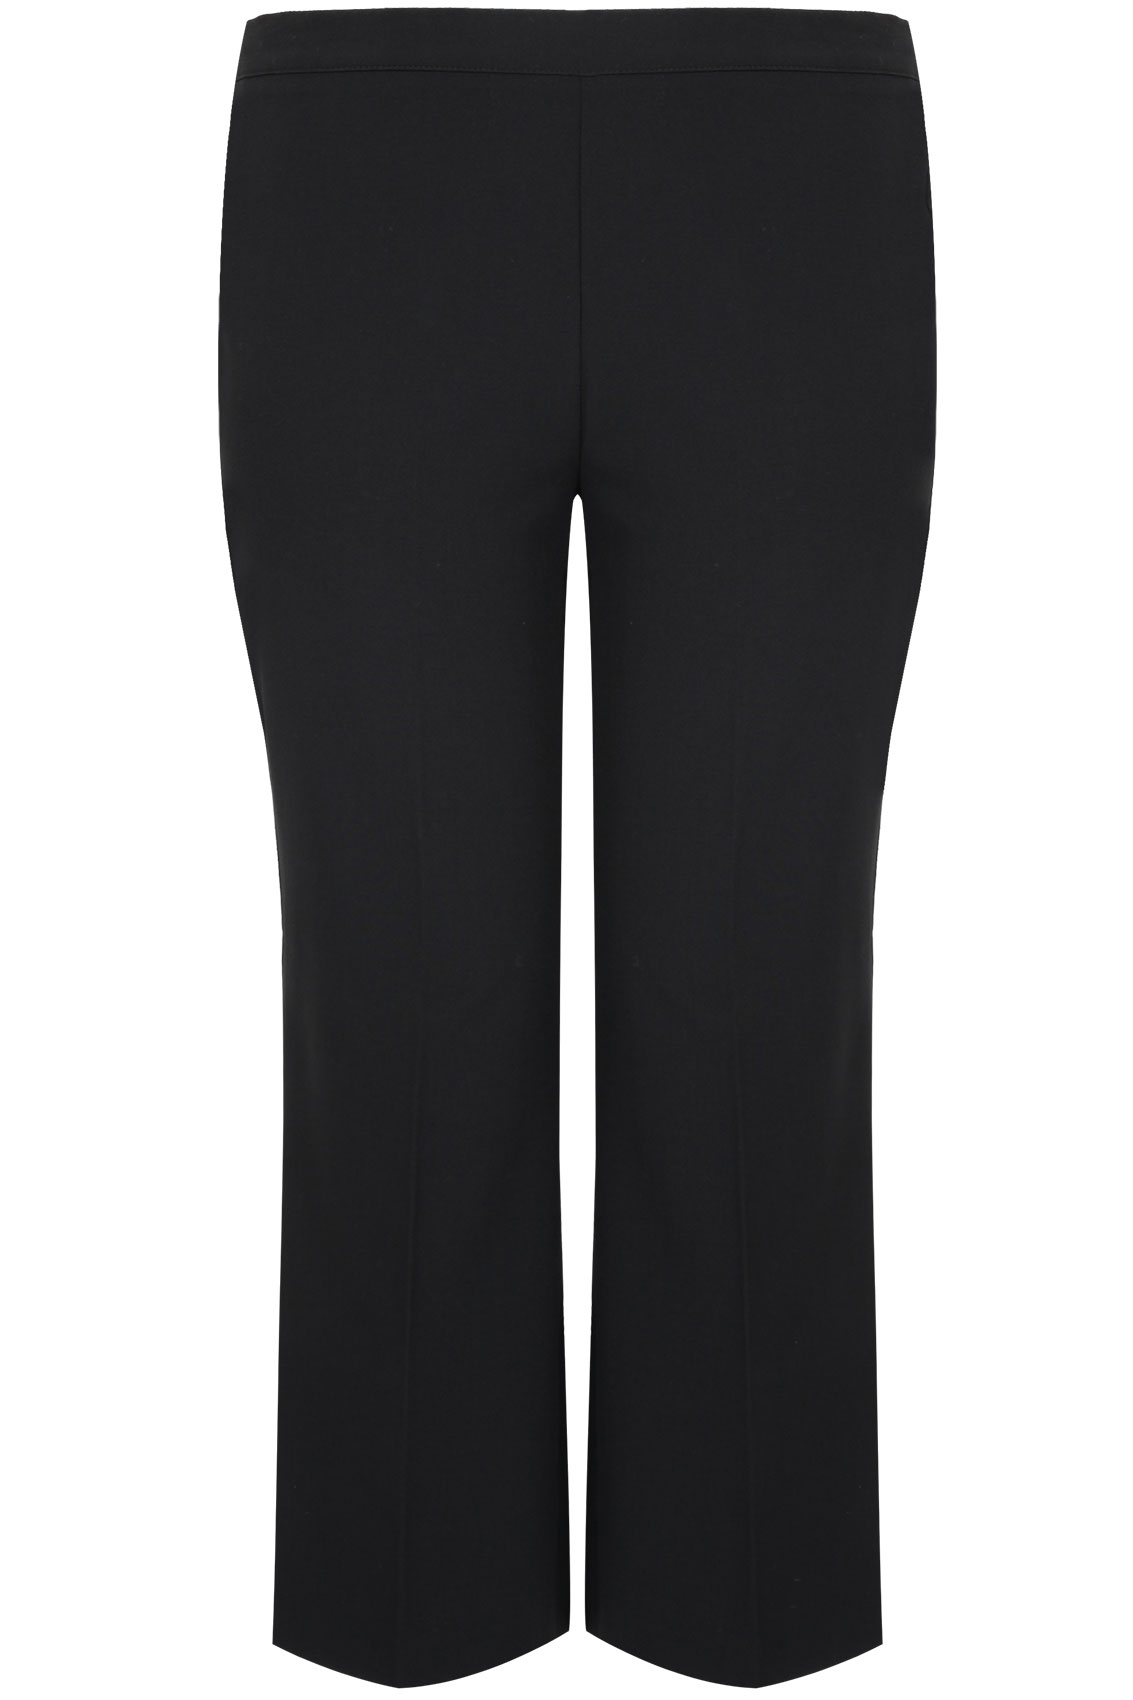 pantalon coupe droite noir classique avec ceinture  u00c9lastique